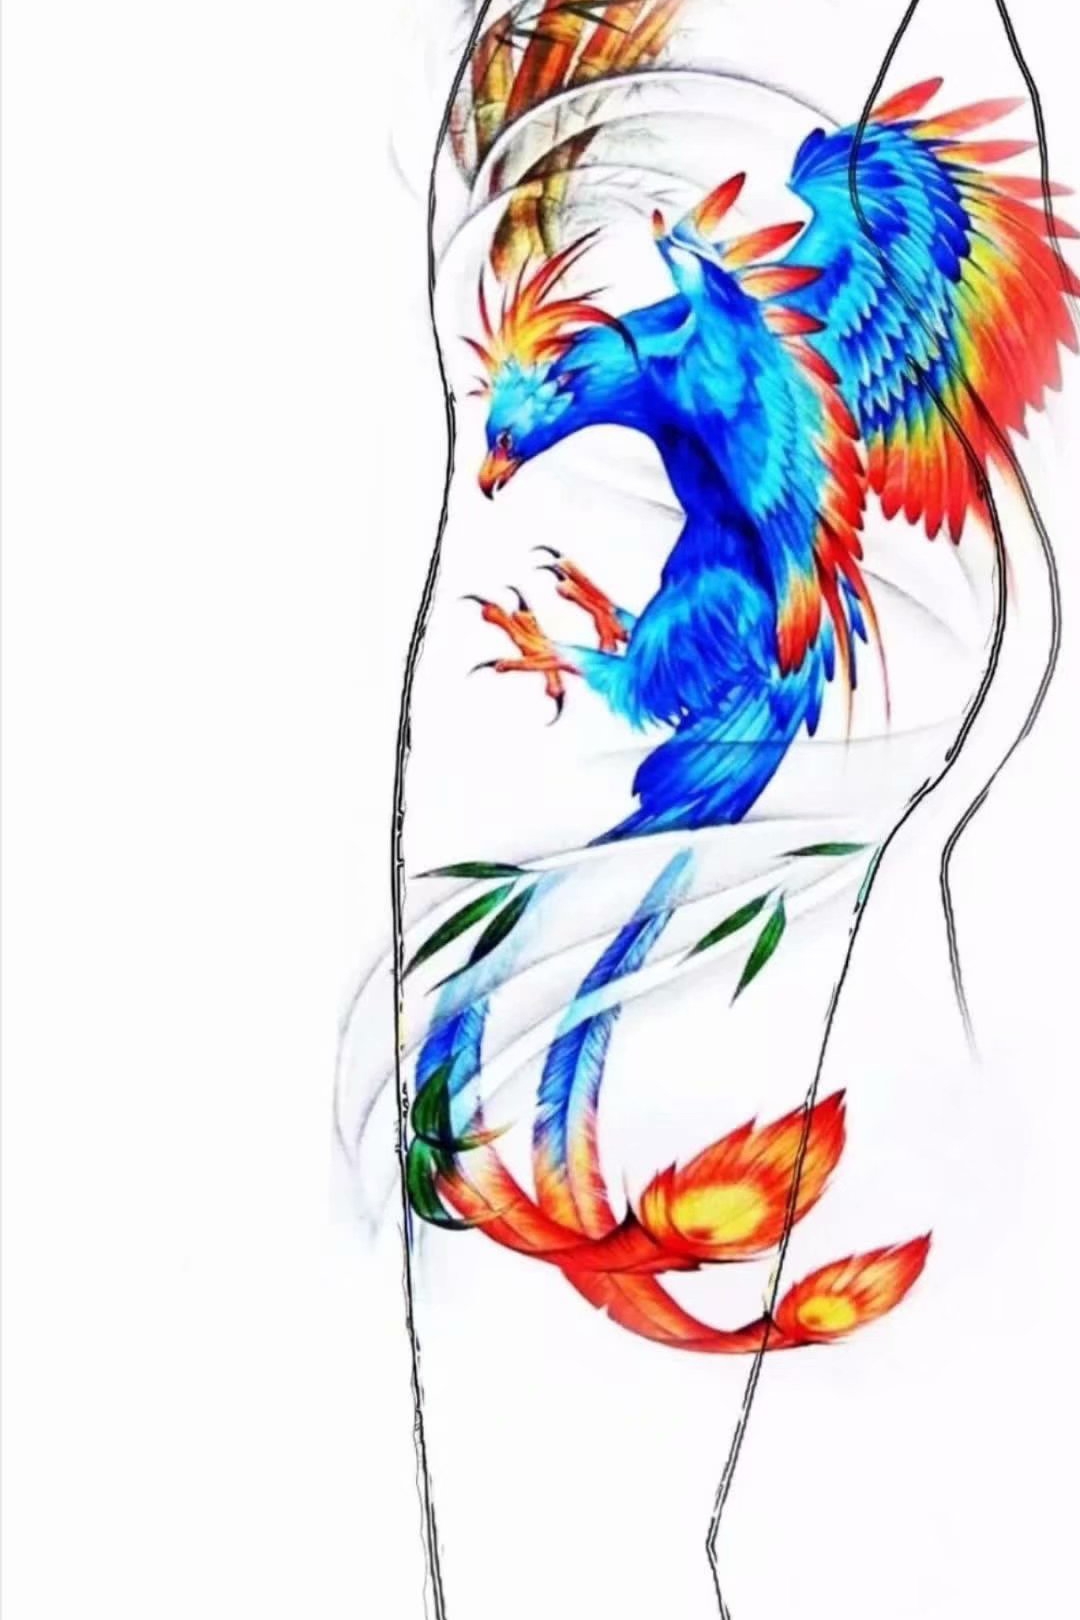 2020年抖音网红版新传统大腿侧面彩色蓝色朱雀纹身手稿图片